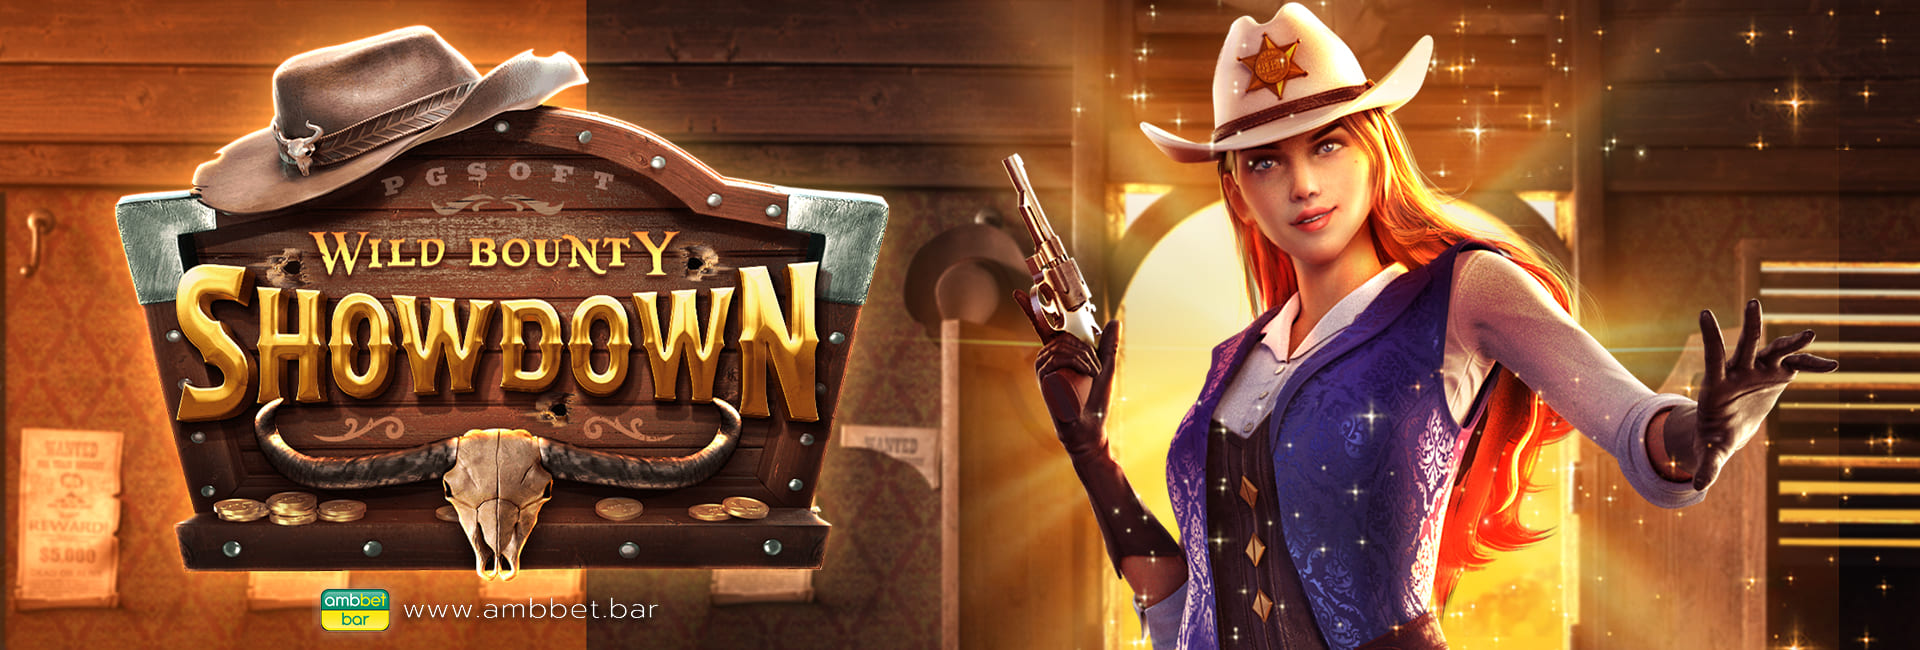 Wild Bounty Showdown banner